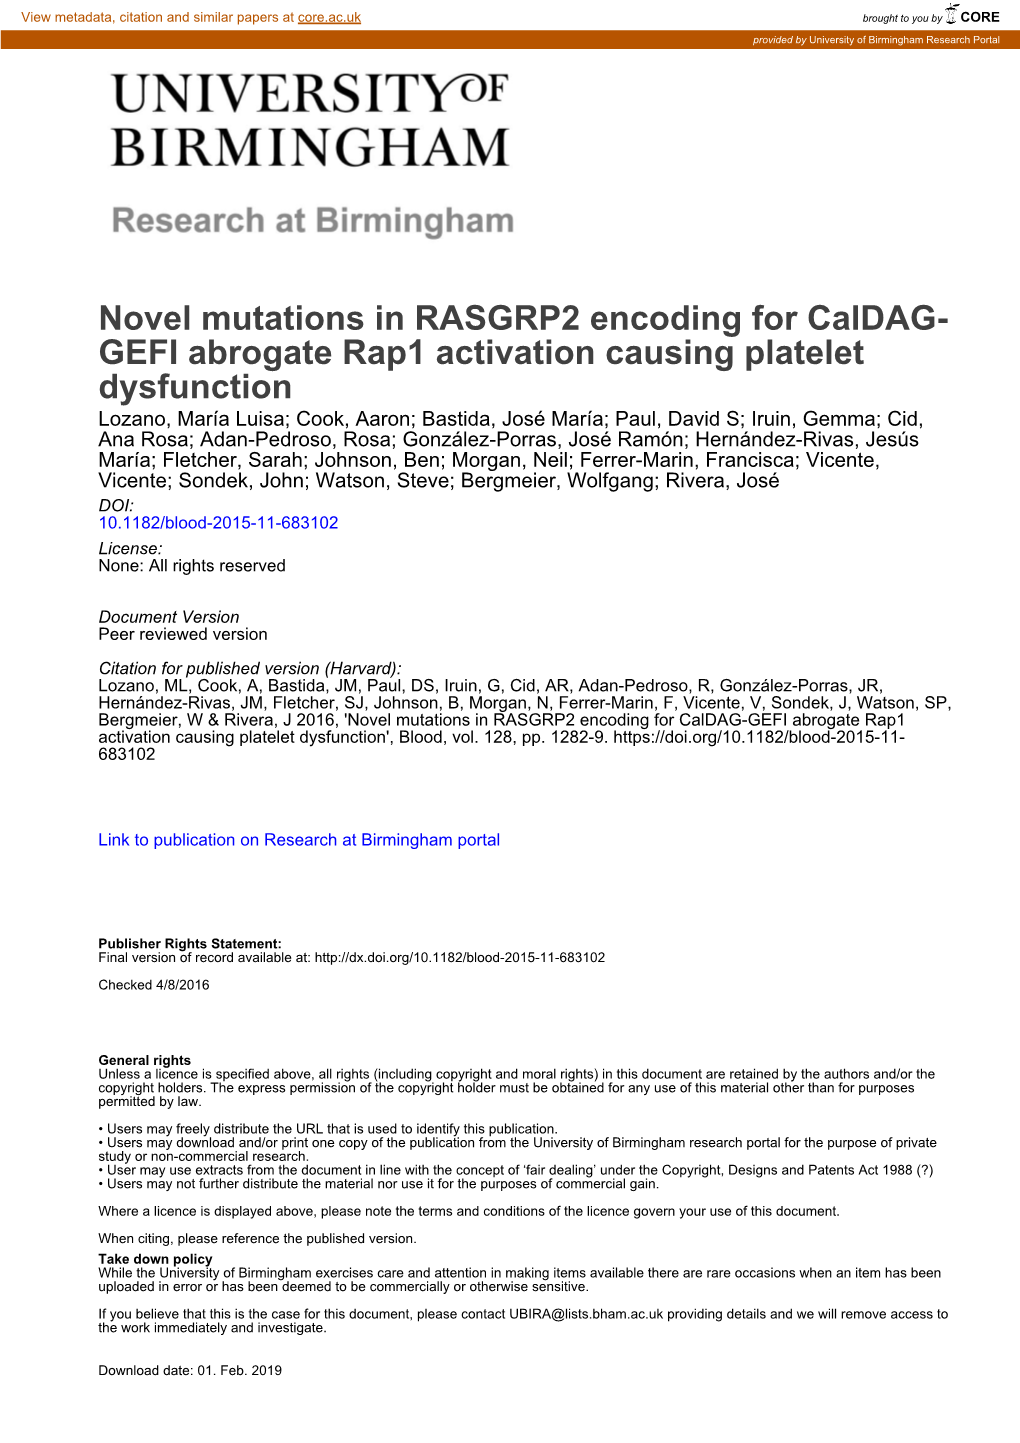 Novel Mutations in RASGRP2 Encoding for Caldag- GEFI